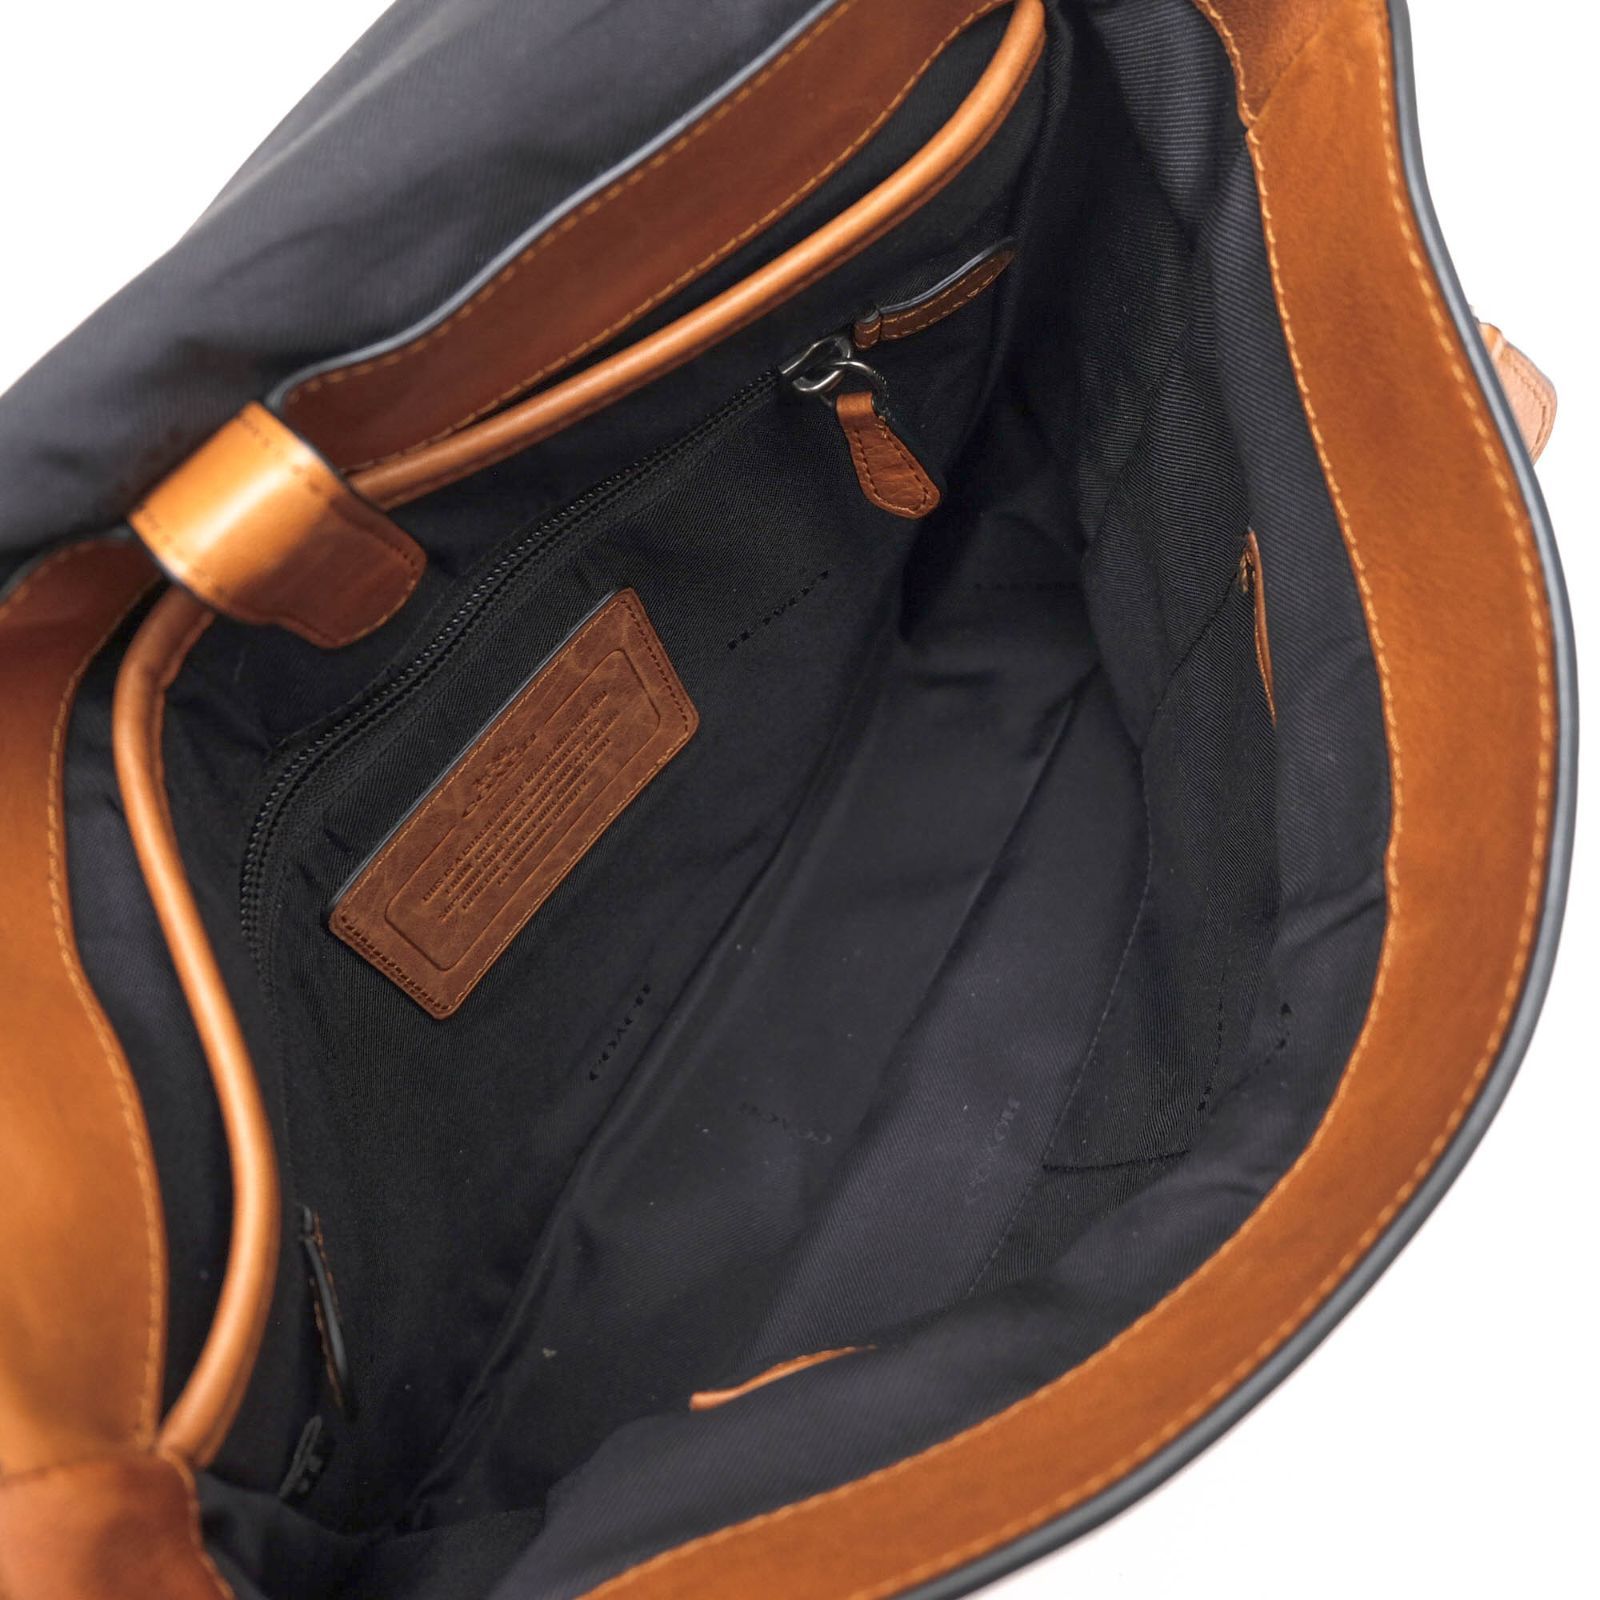 コーチ／COACH バッグ ショルダーバッグ 鞄 メンズ 男性 男性用レザー 革 本革 ブラック 黒  72116 Metropolitan map bag メトロポリタン マップバッグ フラップ式 メッセンジャーバッグメンズ